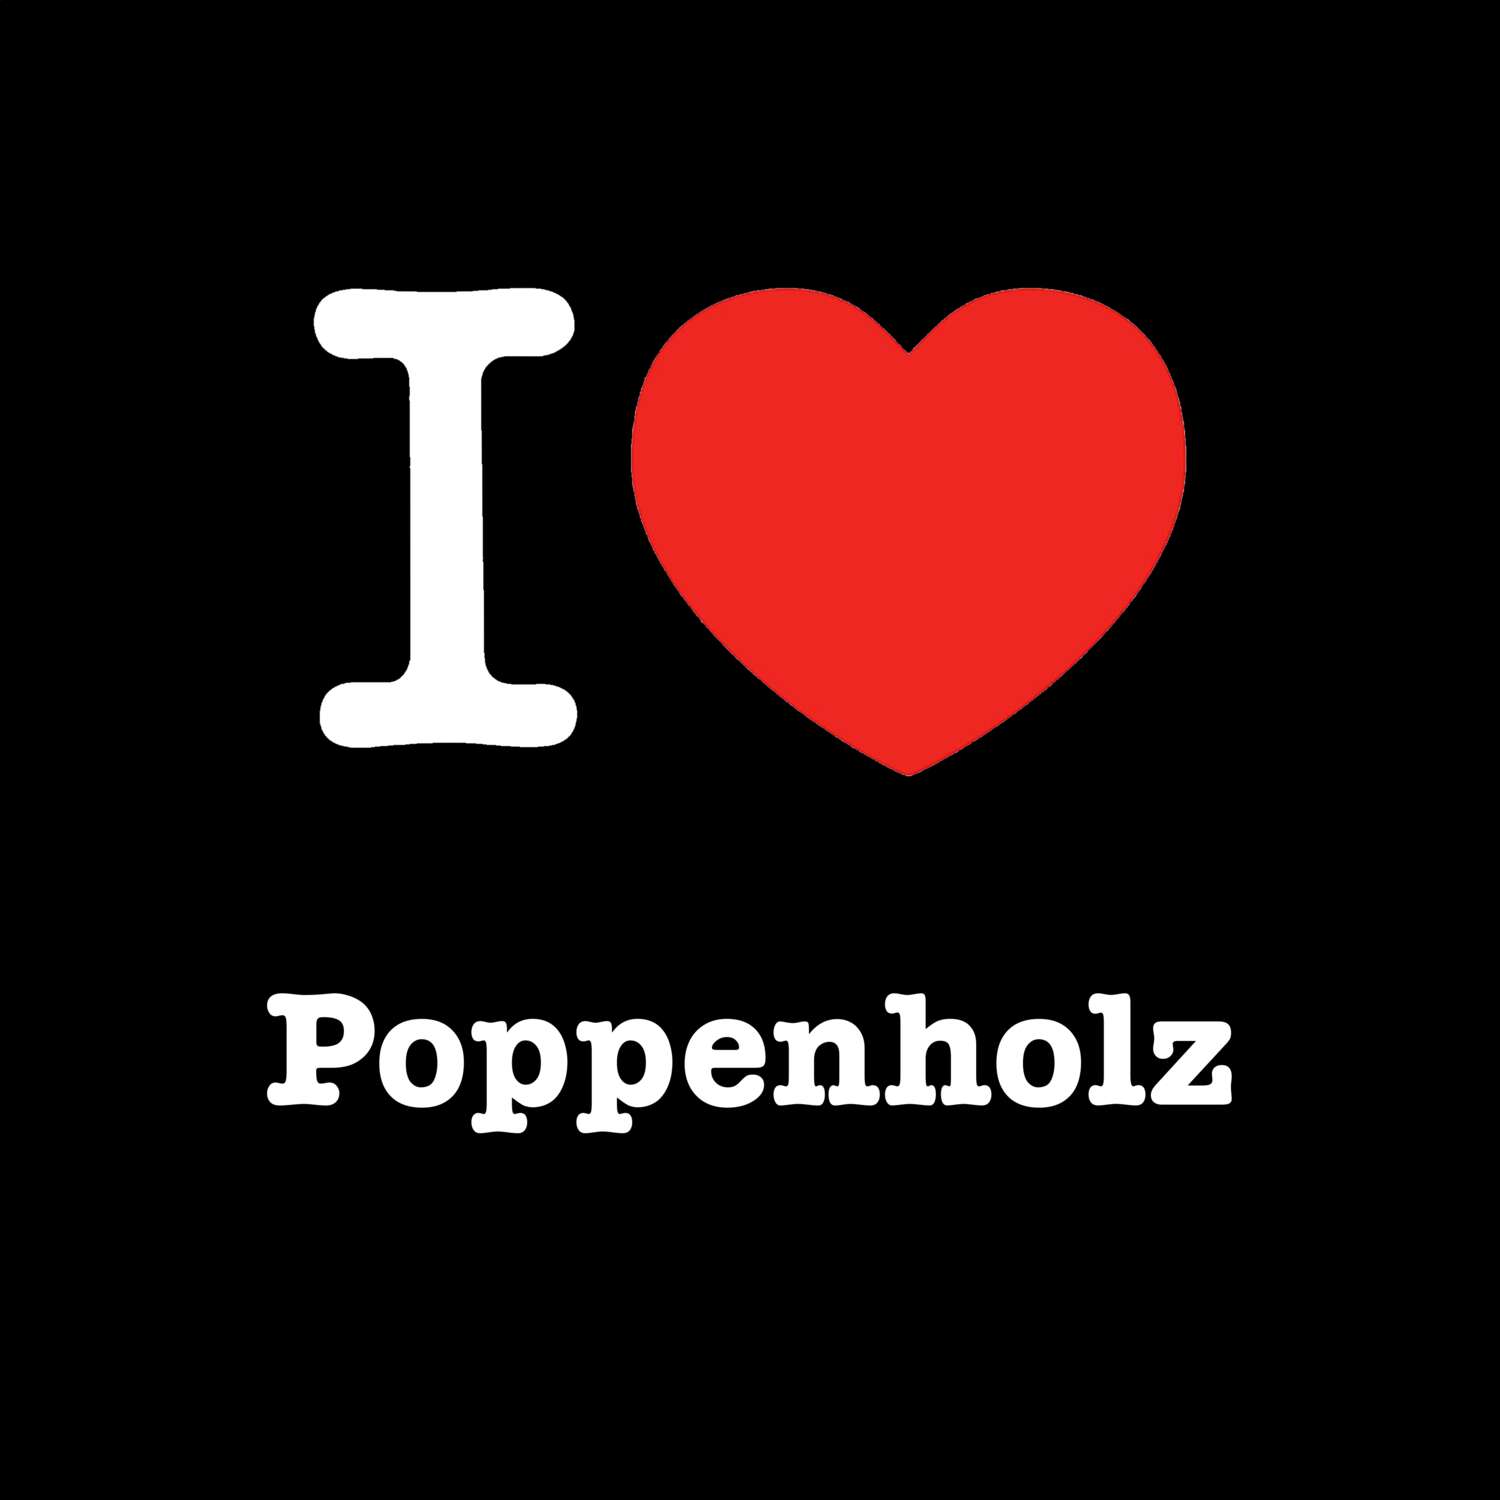 Poppenholz T-Shirt »I love«